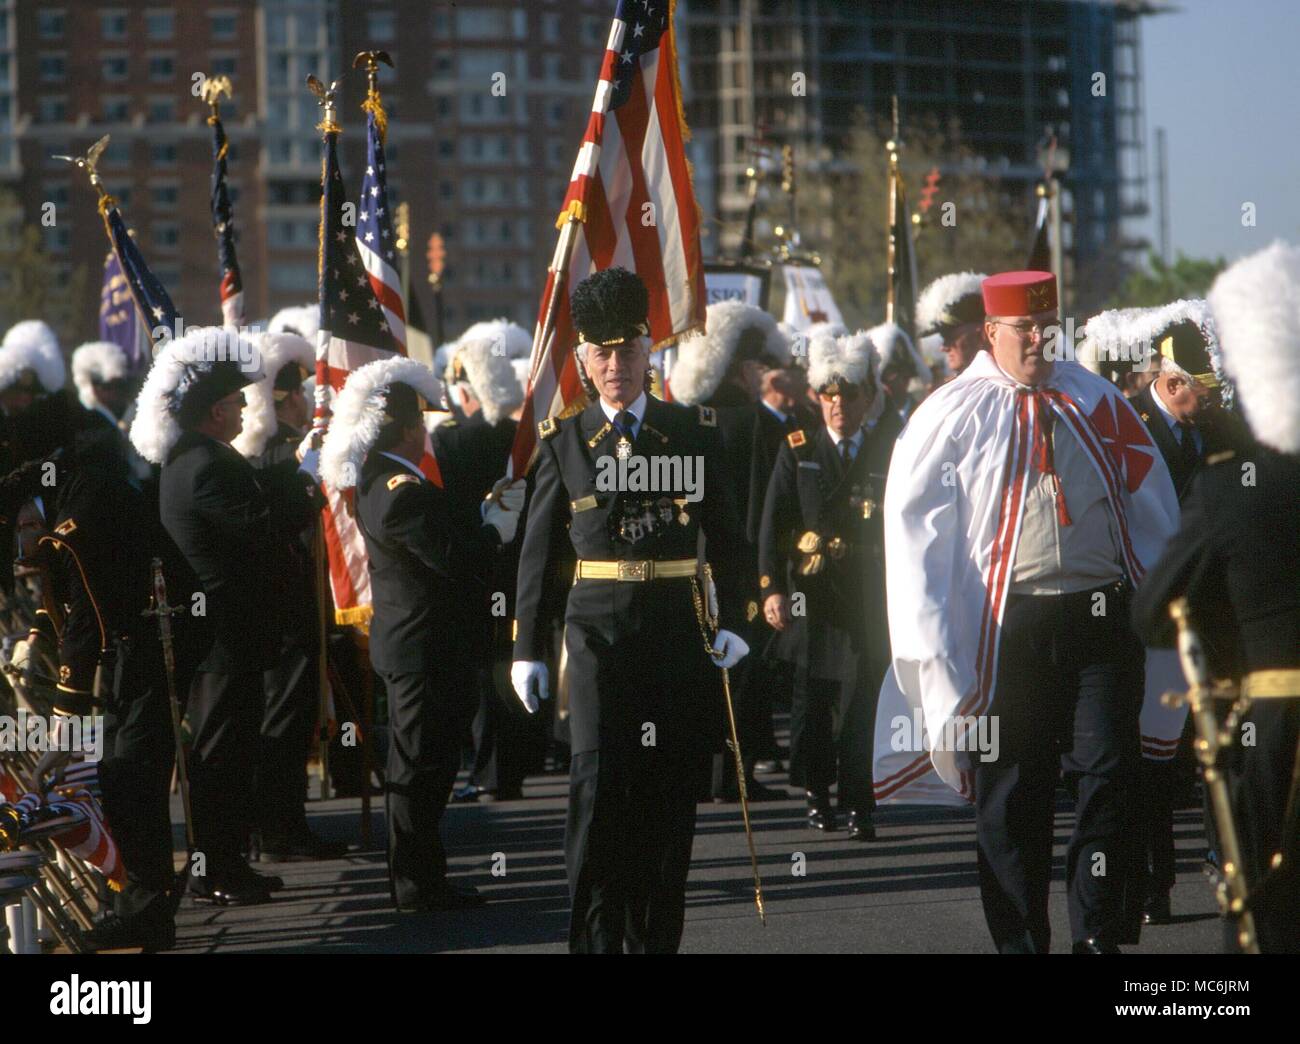 MASONIC - Cavalieri Templari, il raduno di Pasqua del Masonic Cavalieri Templari presso la George Washington Masonic Memorial Hall di Alessandria (a sud di Washington DC) nel 1998 Foto Stock